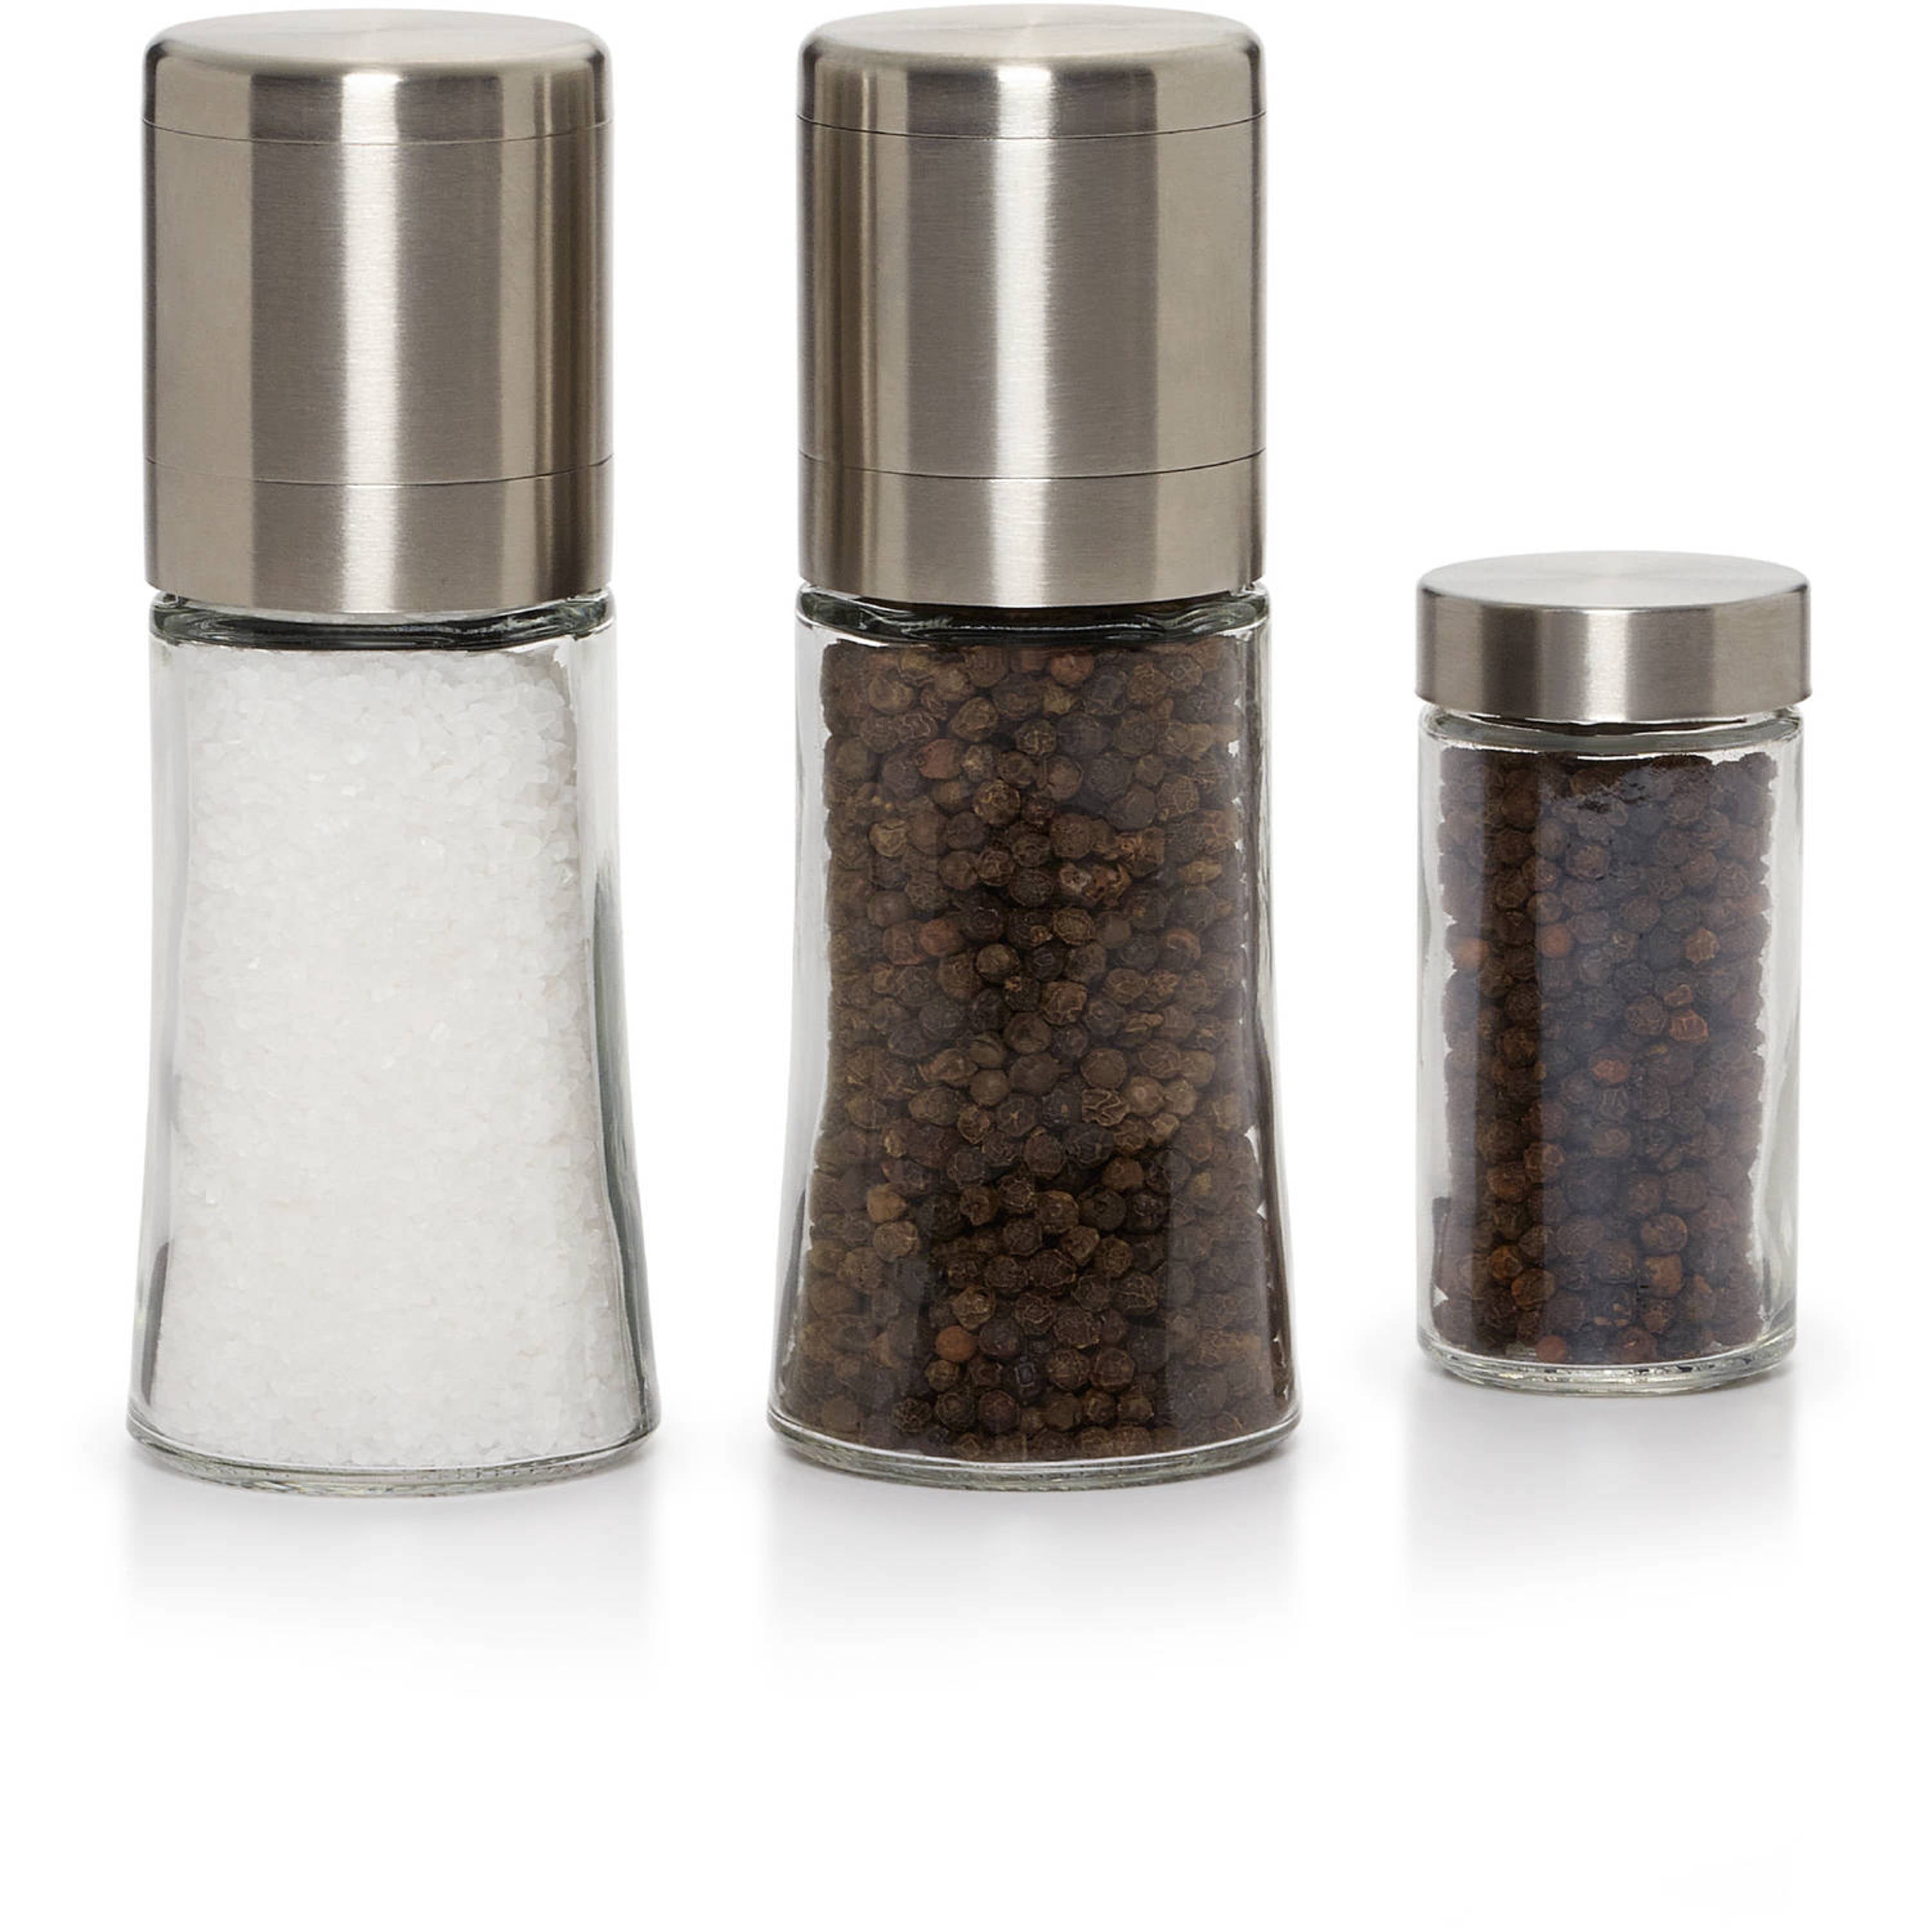 Disposable Salt & Pepper Grinder- 4.09 oz